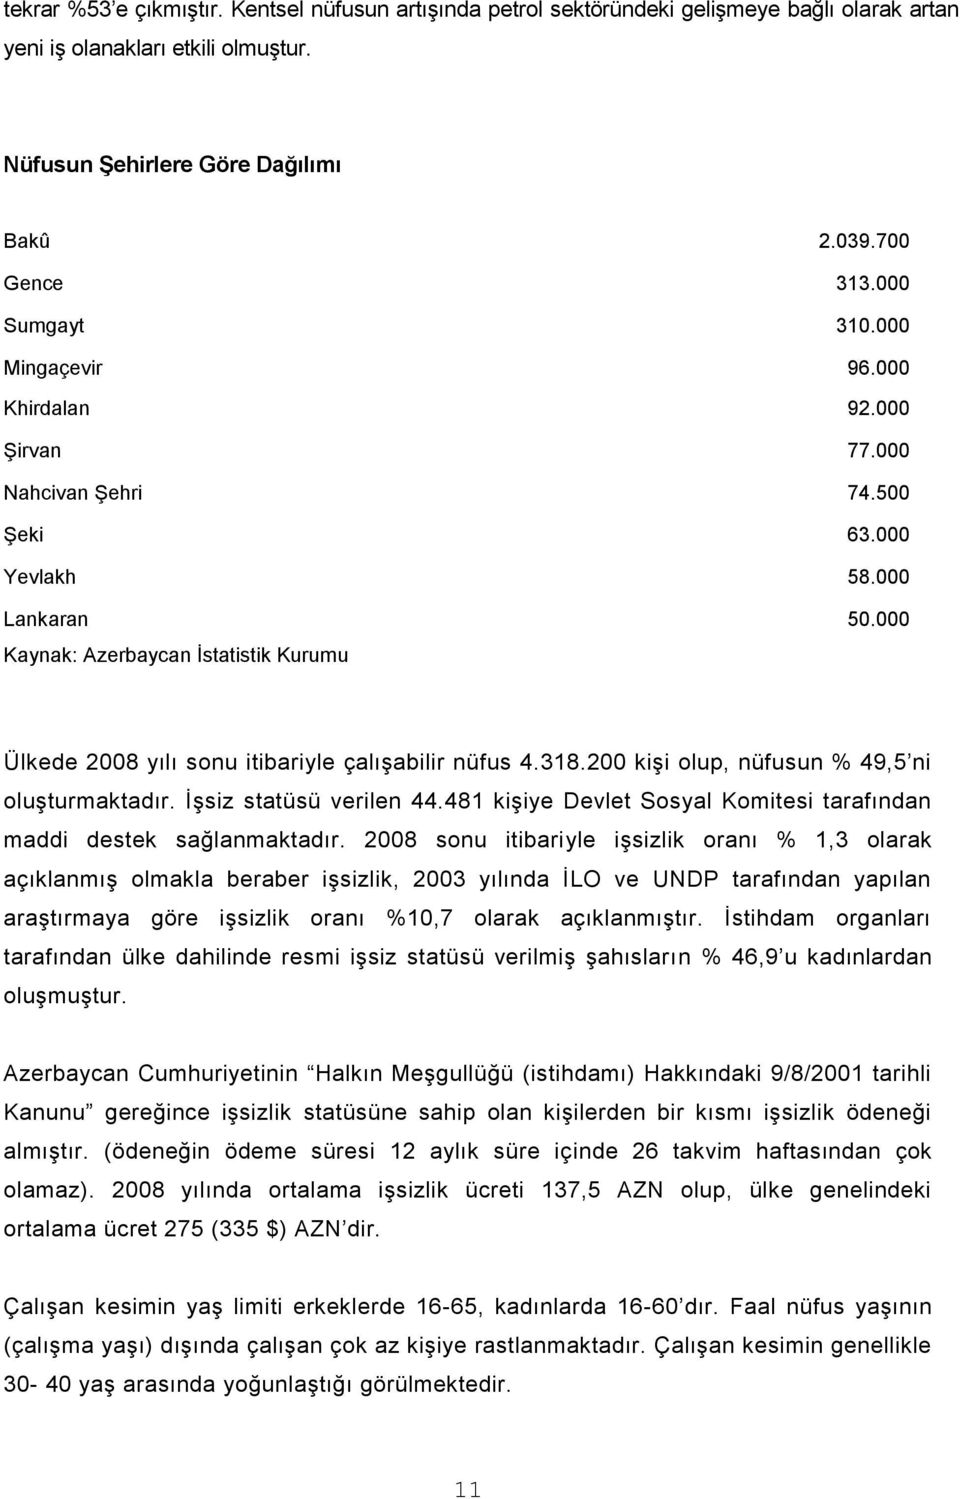 000 Kaynak: Azerbaycan İstatistik Kurumu Ülkede 2008 yılı sonu itibariyle çalışabilir nüfus 4.318.200 kişi olup, nüfusun % 49,5 ni oluşturmaktadır. İşsiz statüsü verilen 44.